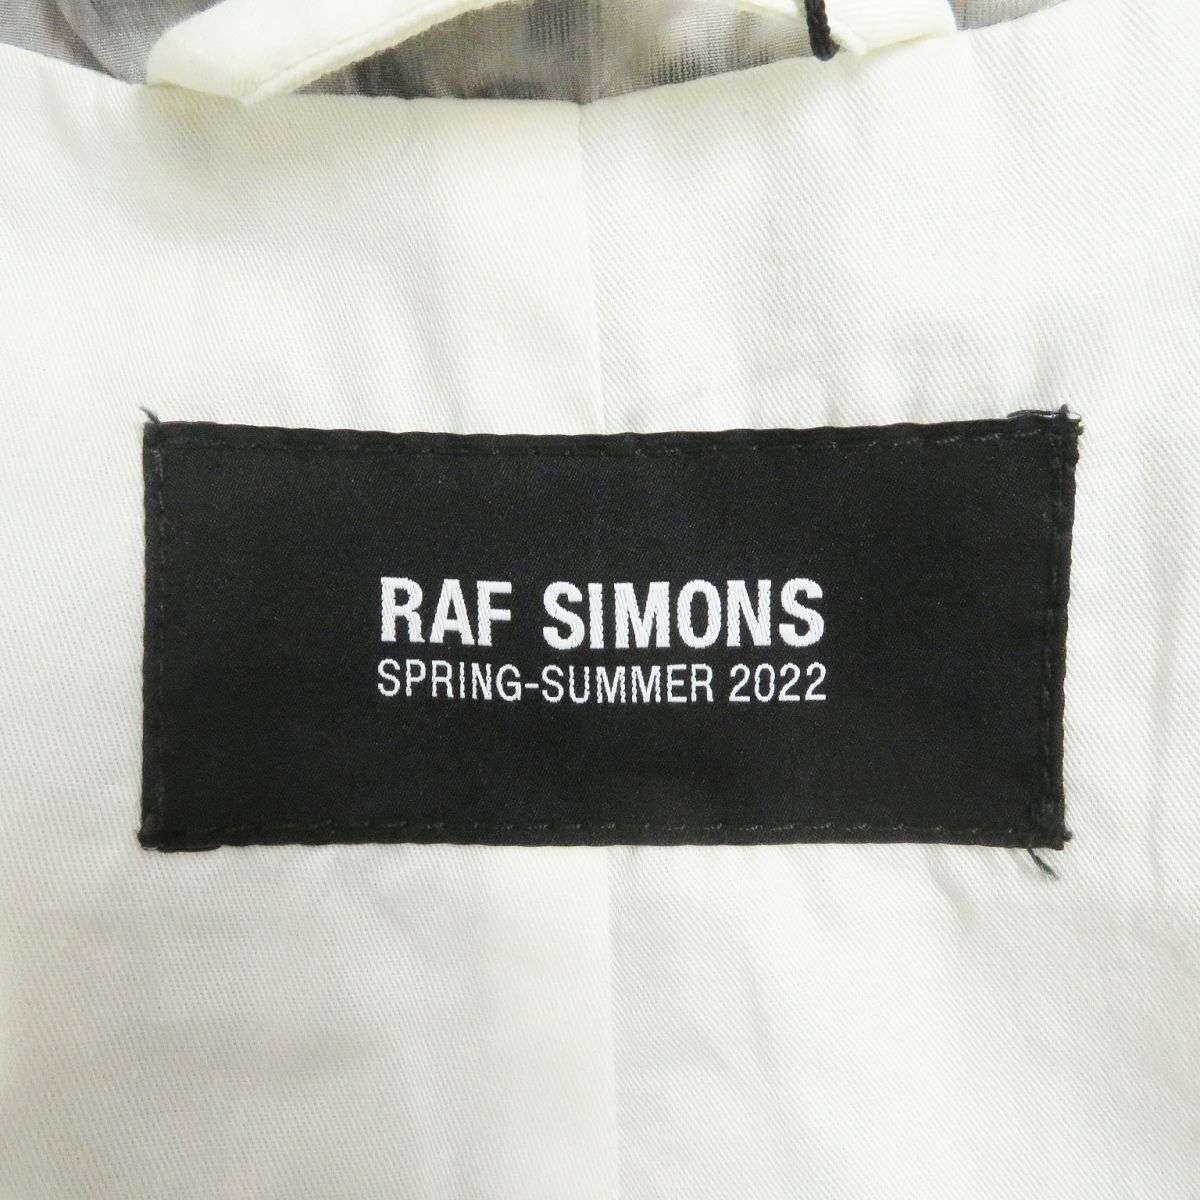  не использовался товар *22SS Raf Simons общий рисунок Logo кнопка Relaxed fit raincoat Пальто Честерфилд нейлон пальто серый оттенок голубого M сделано в Италии 